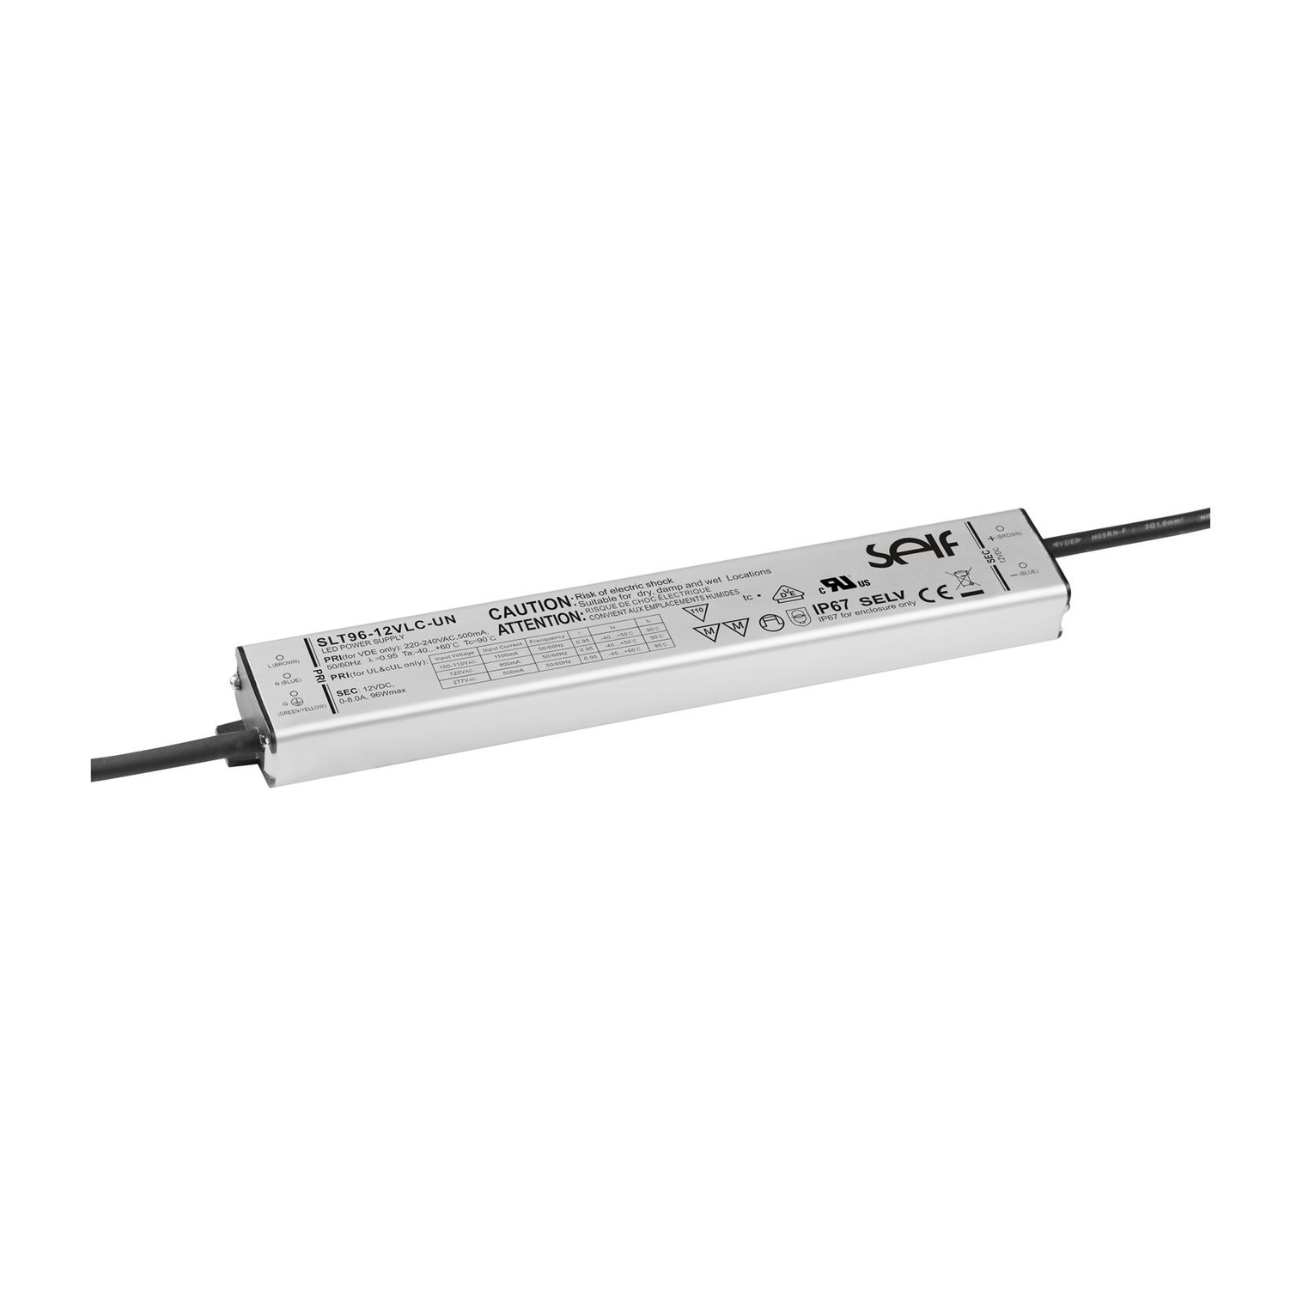 96 Watt LED-Treiber (12 Volt, 8 Ampere) von SELF für Signage, LED-Lichtwerbung und andere LED-Anwendungen: SLT96-12VLC-UN